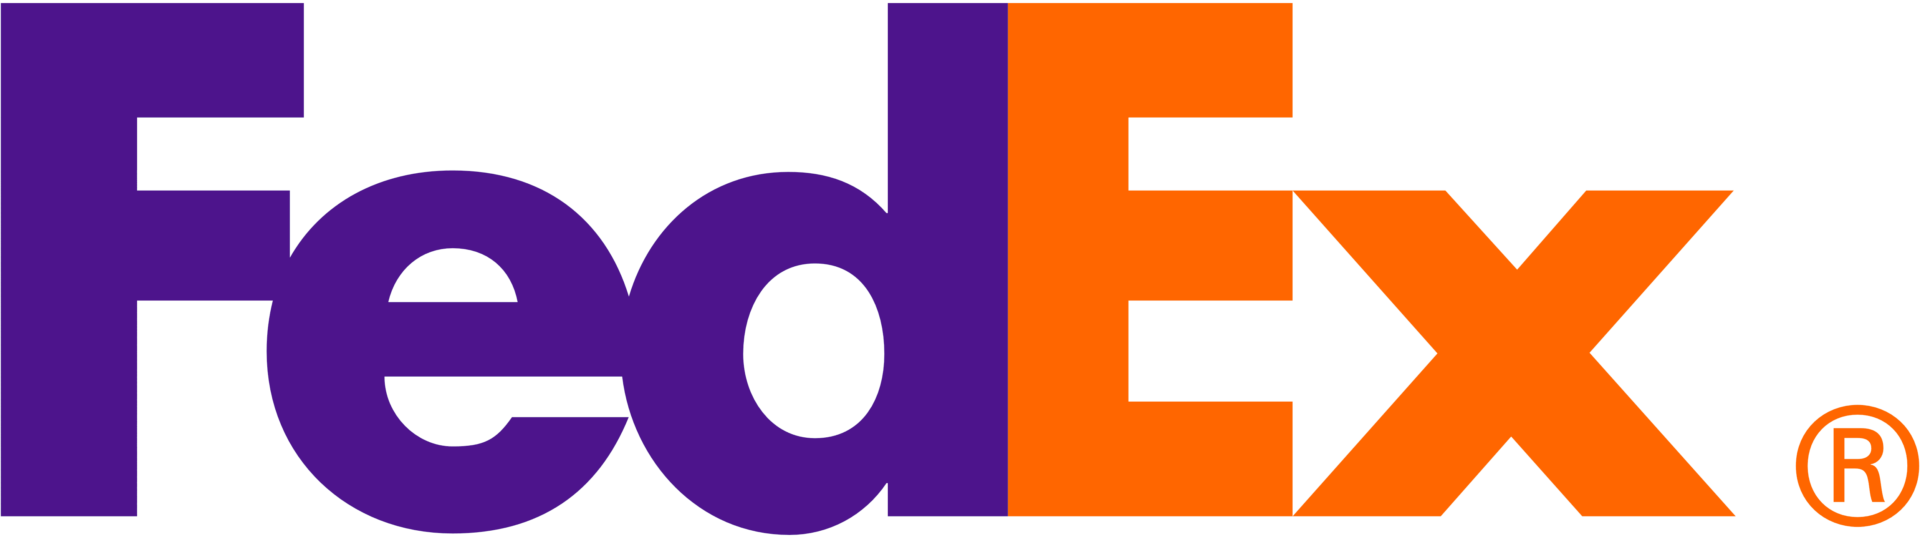 fedex large logo